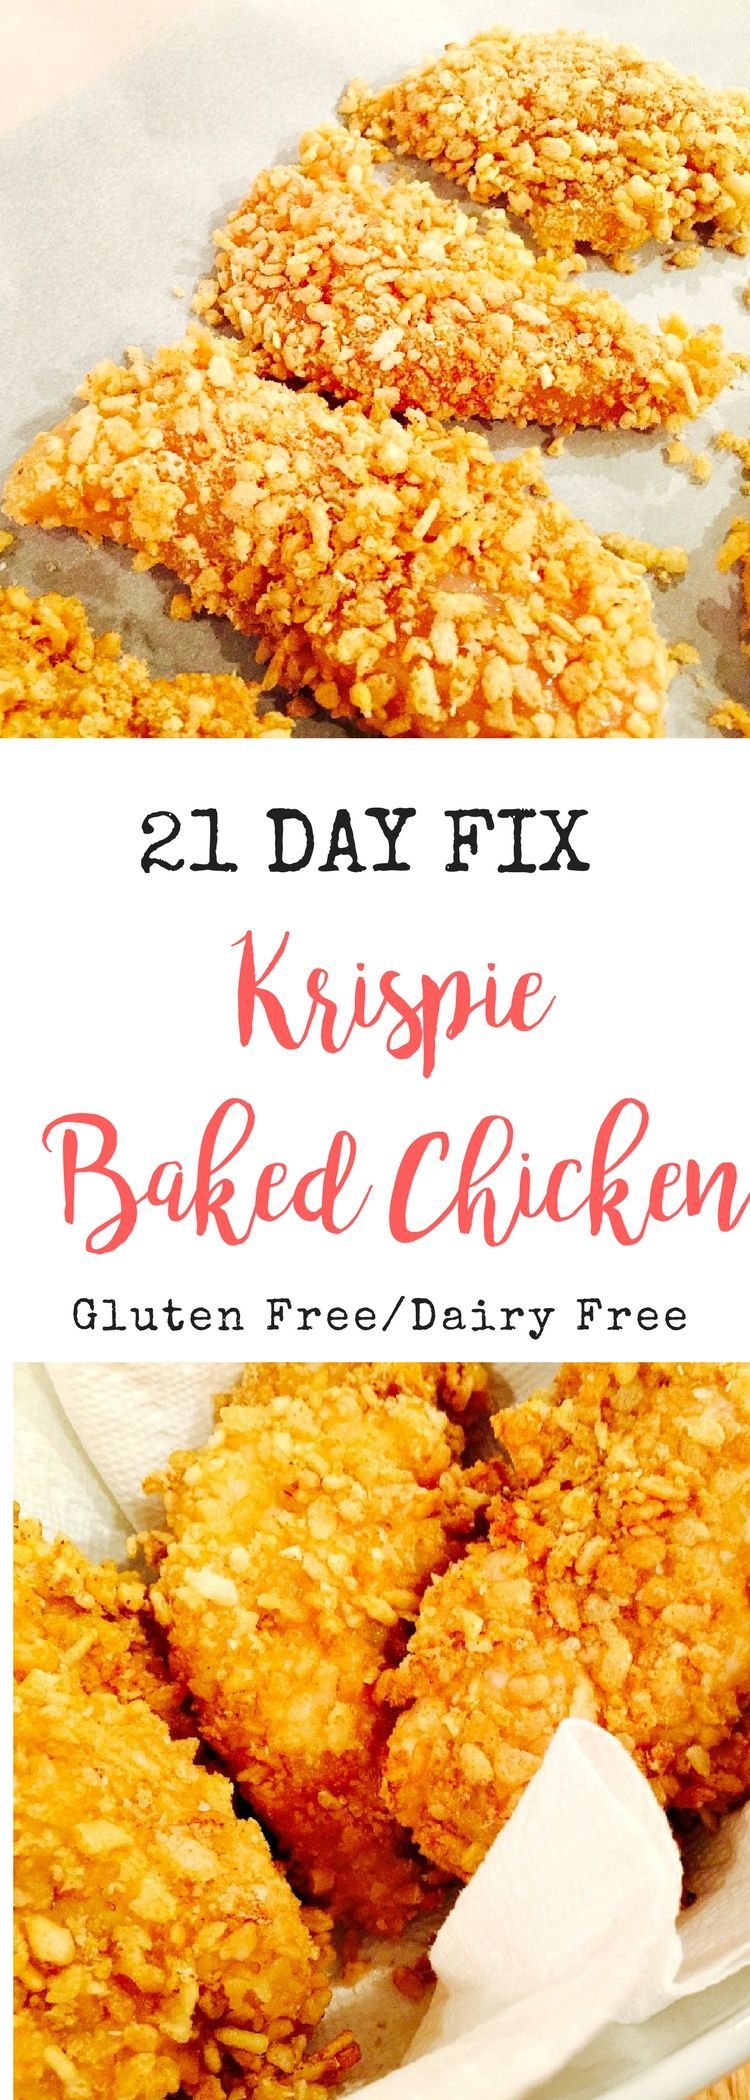 21 Day Fix Krispie Baked Chicken -   23 gluten free rice recipes
 ideas